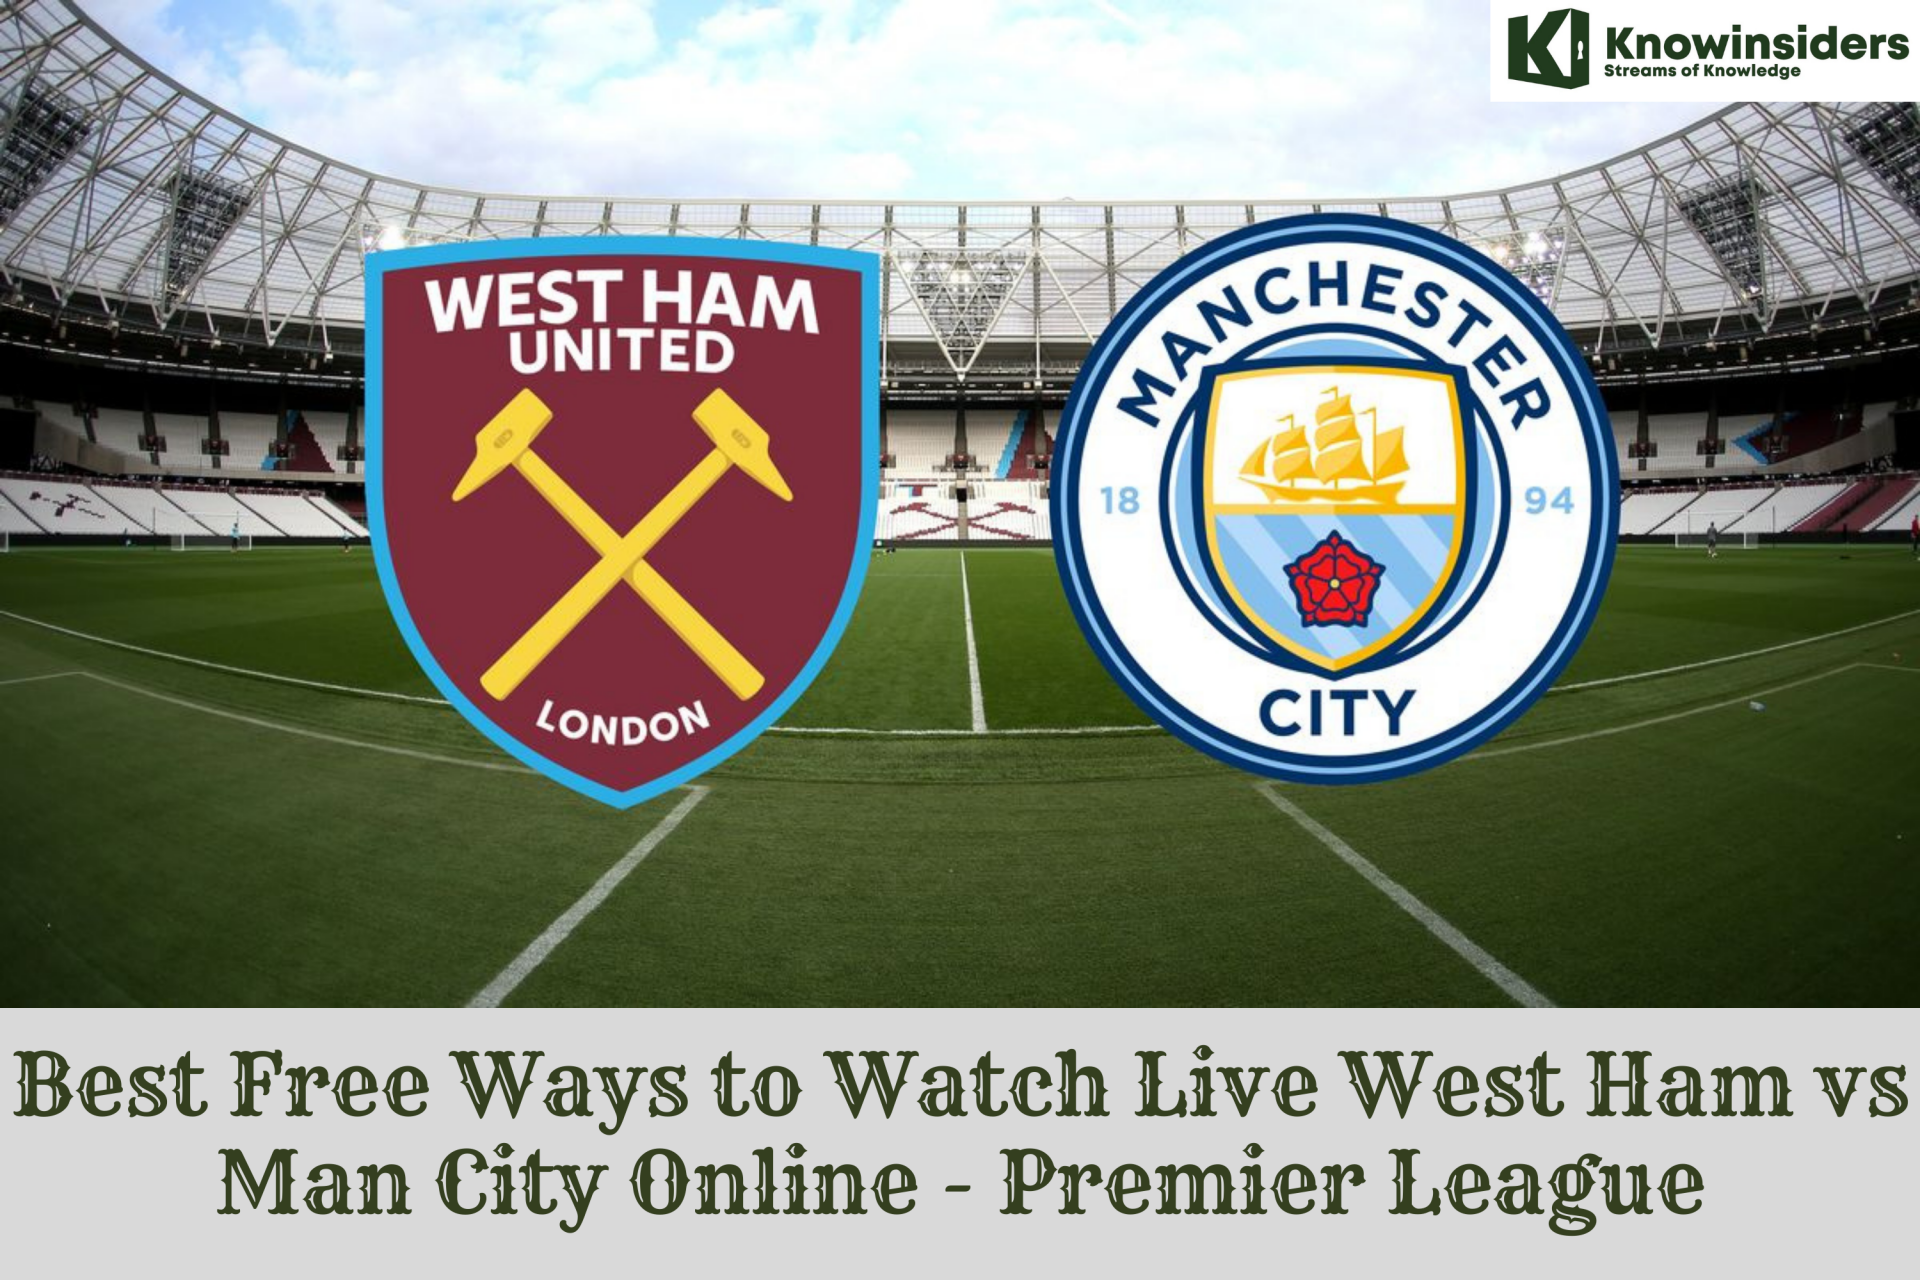 Best Free Ways to Watch Live West Ham vs Man City Online - Premier League